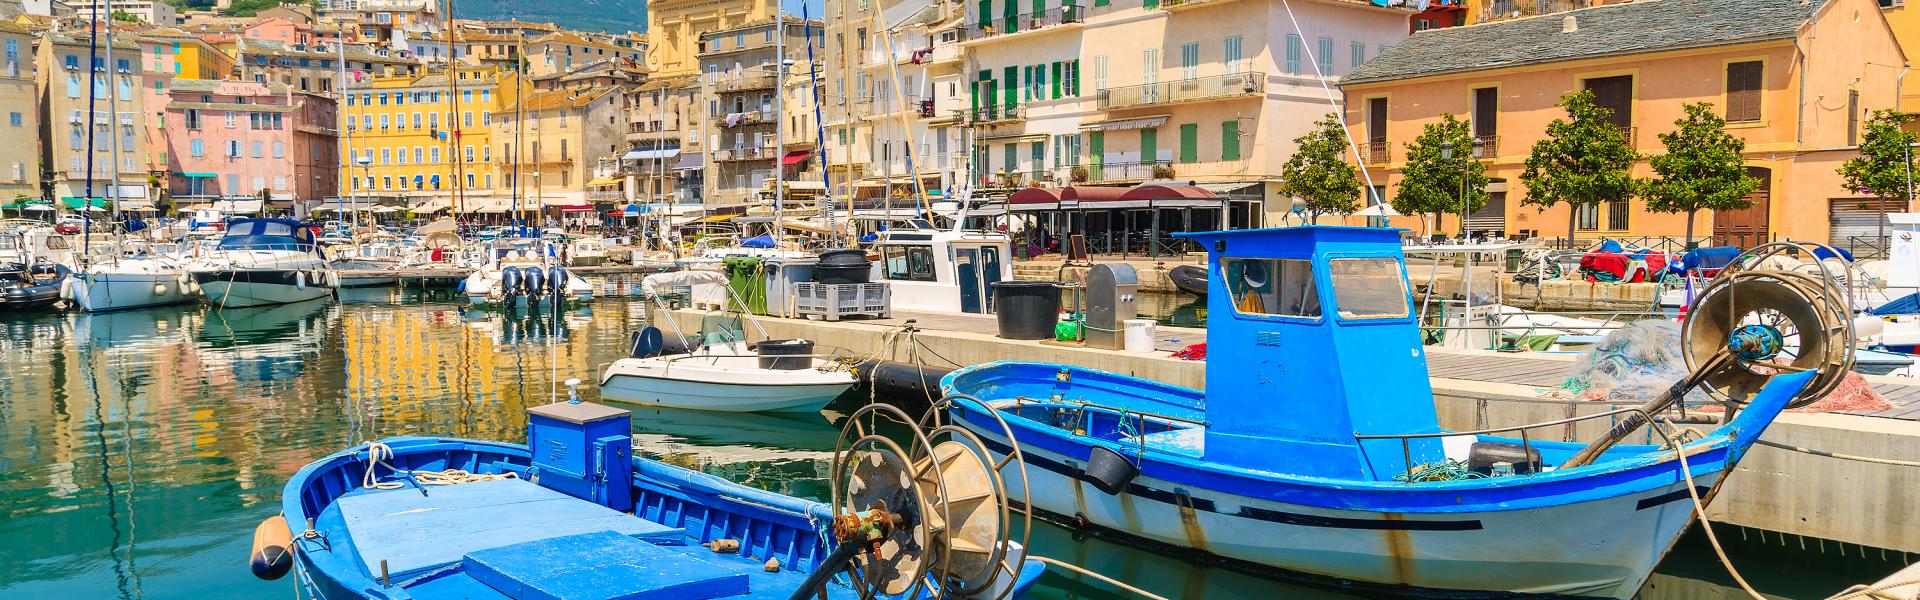 Ferienwohnungen & Ferienhäuser für Urlaub auf Korsika - Casamundo